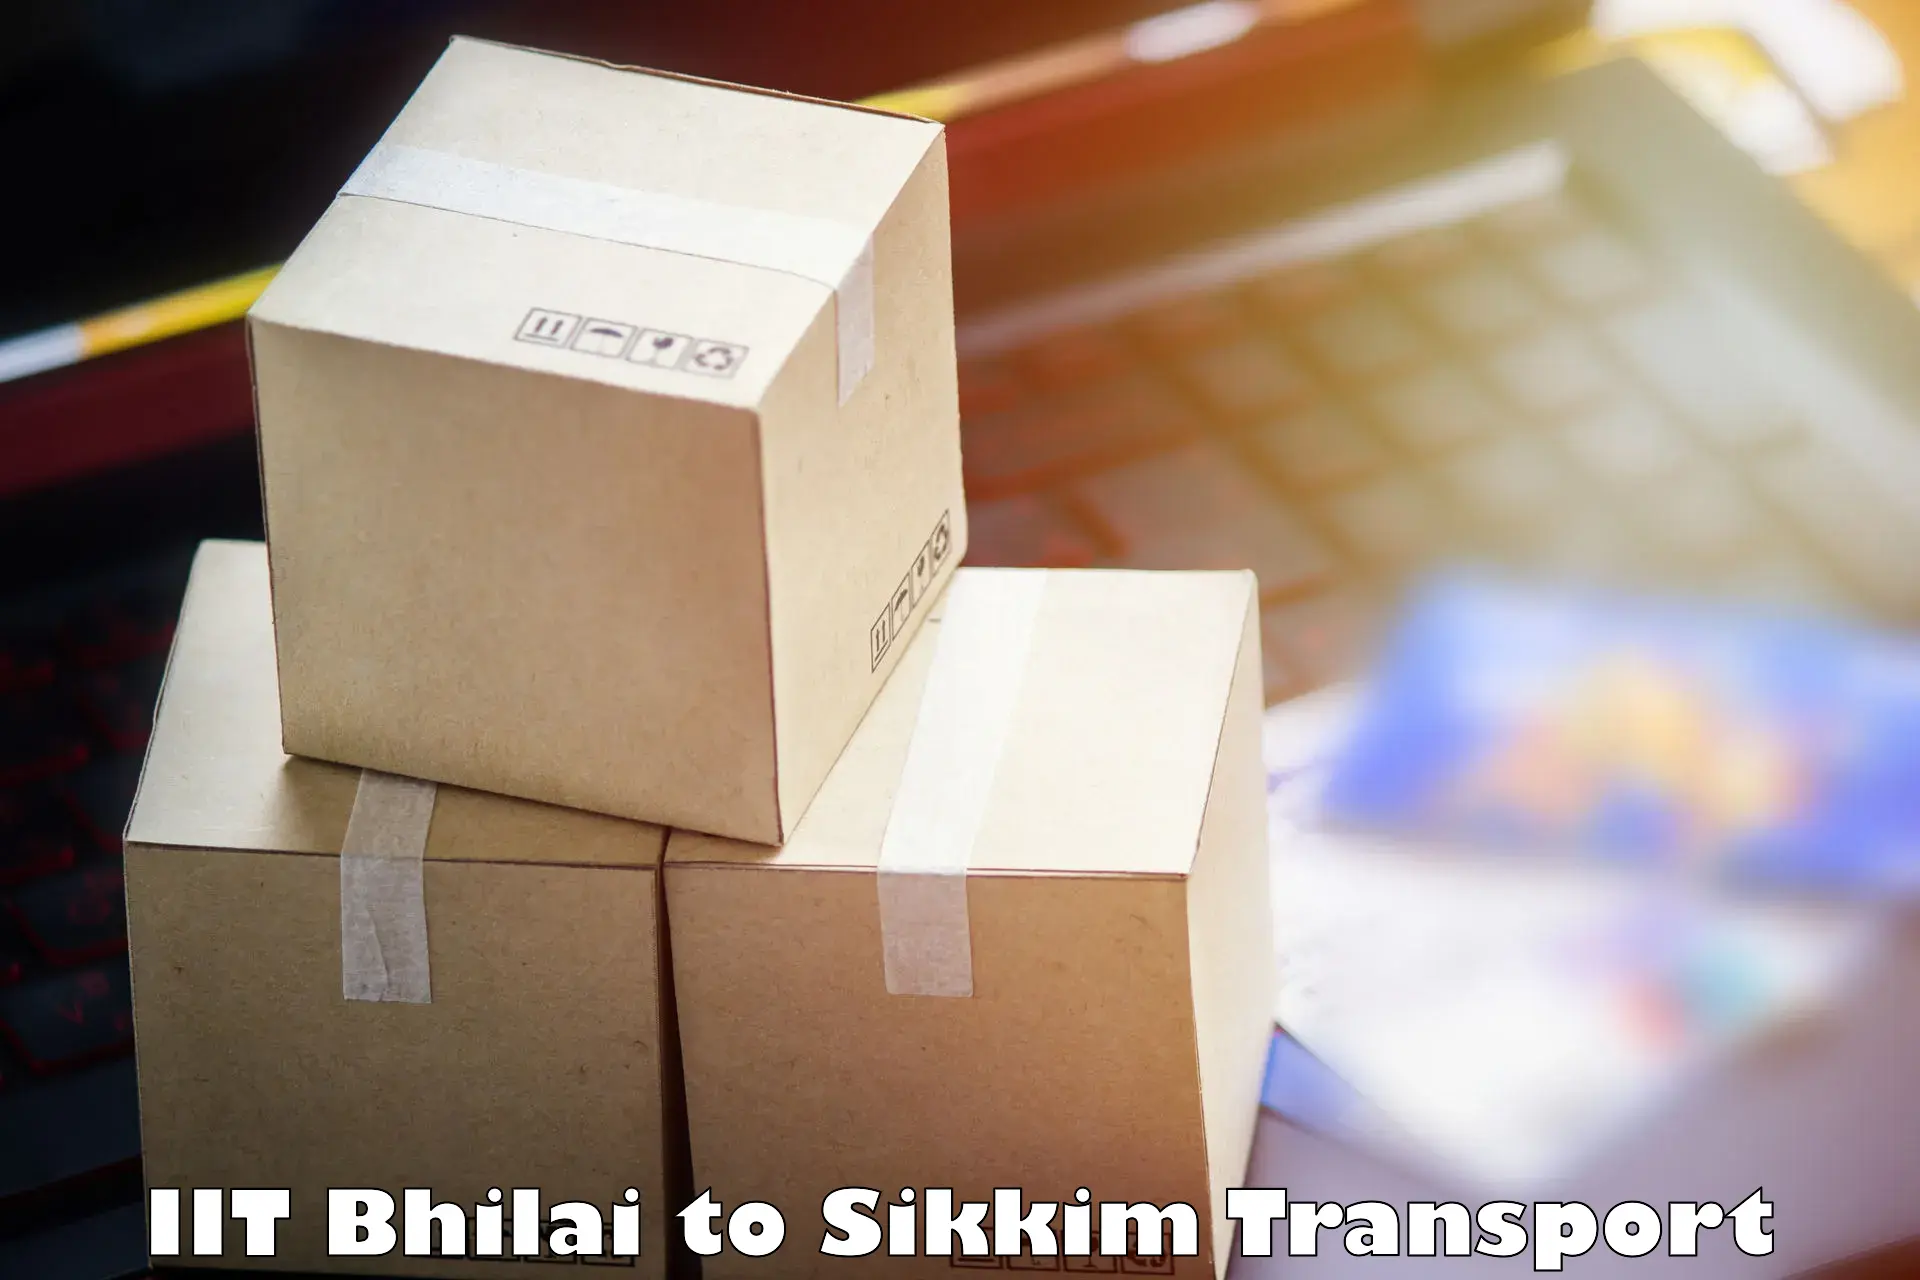 Shipping partner IIT Bhilai to Mangan